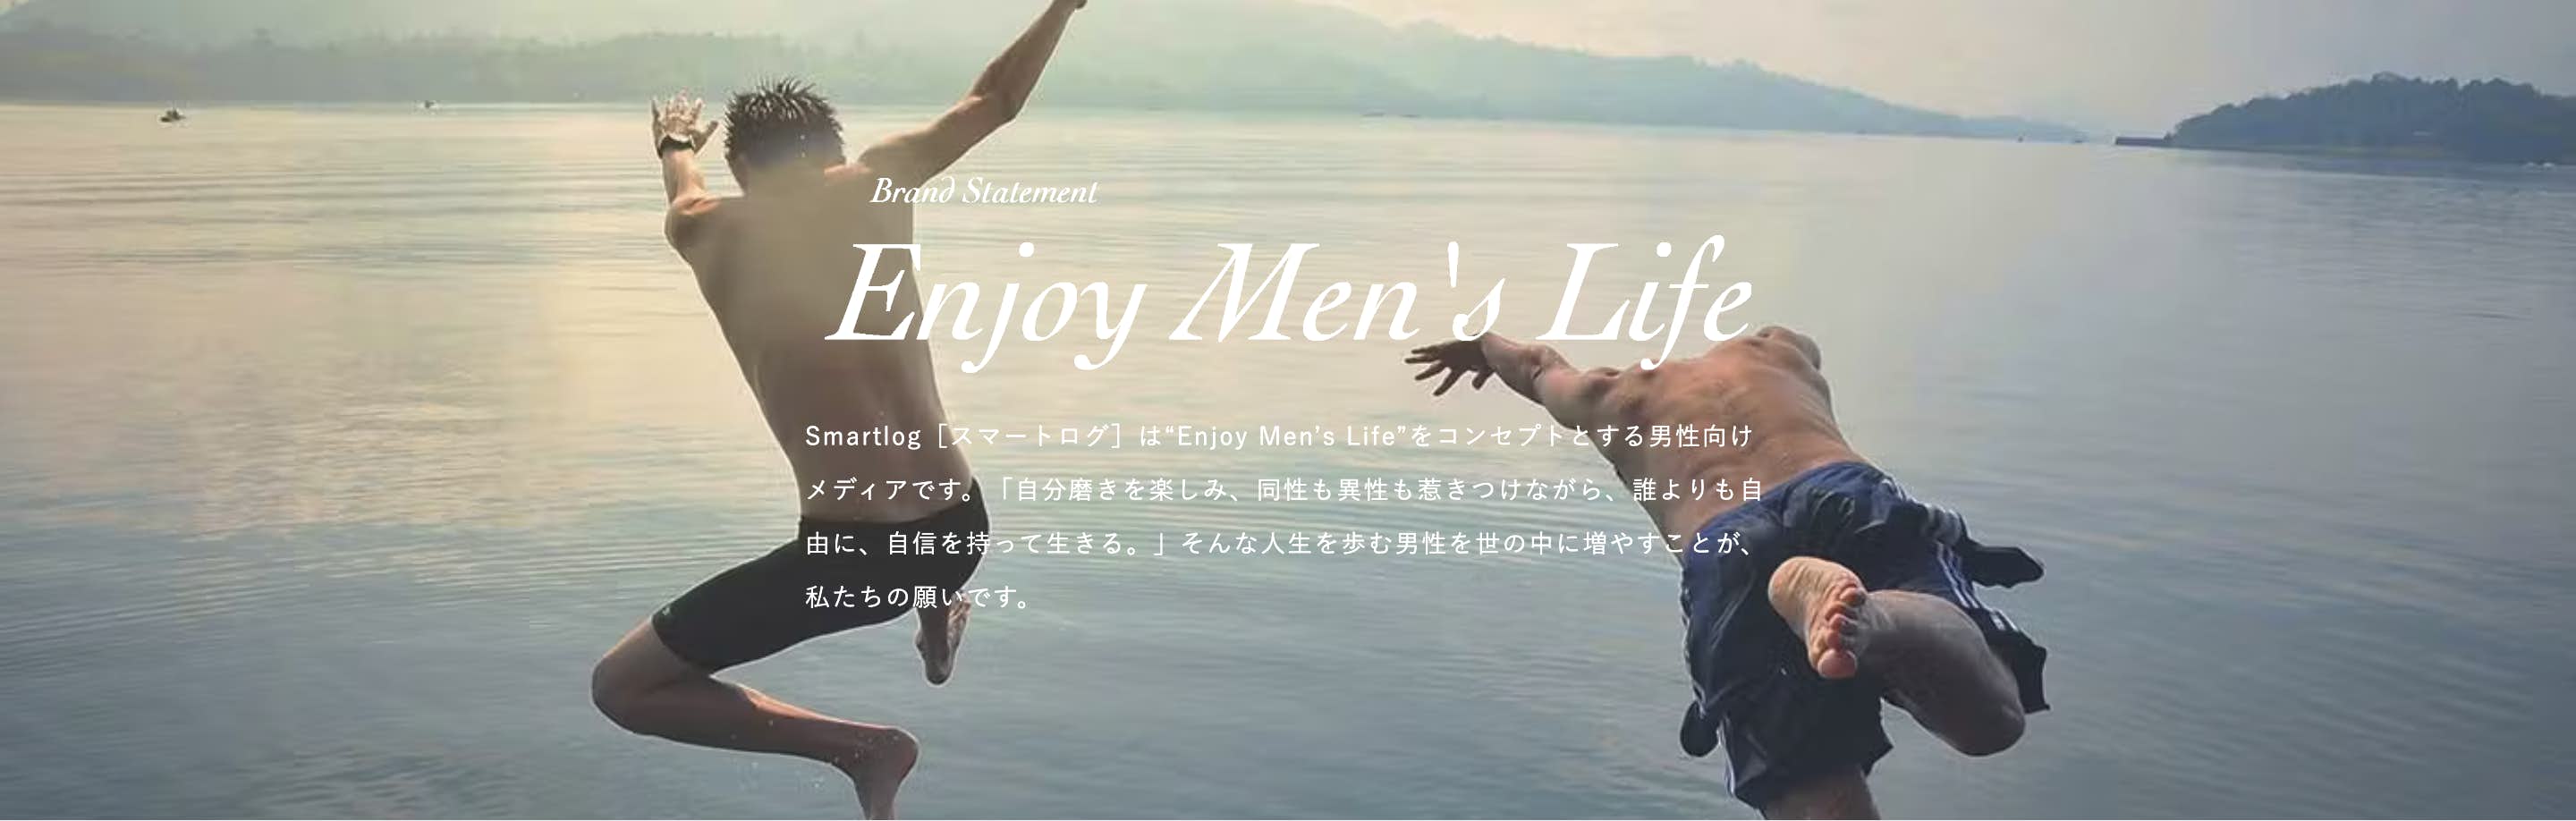 Enjoy Men's Life